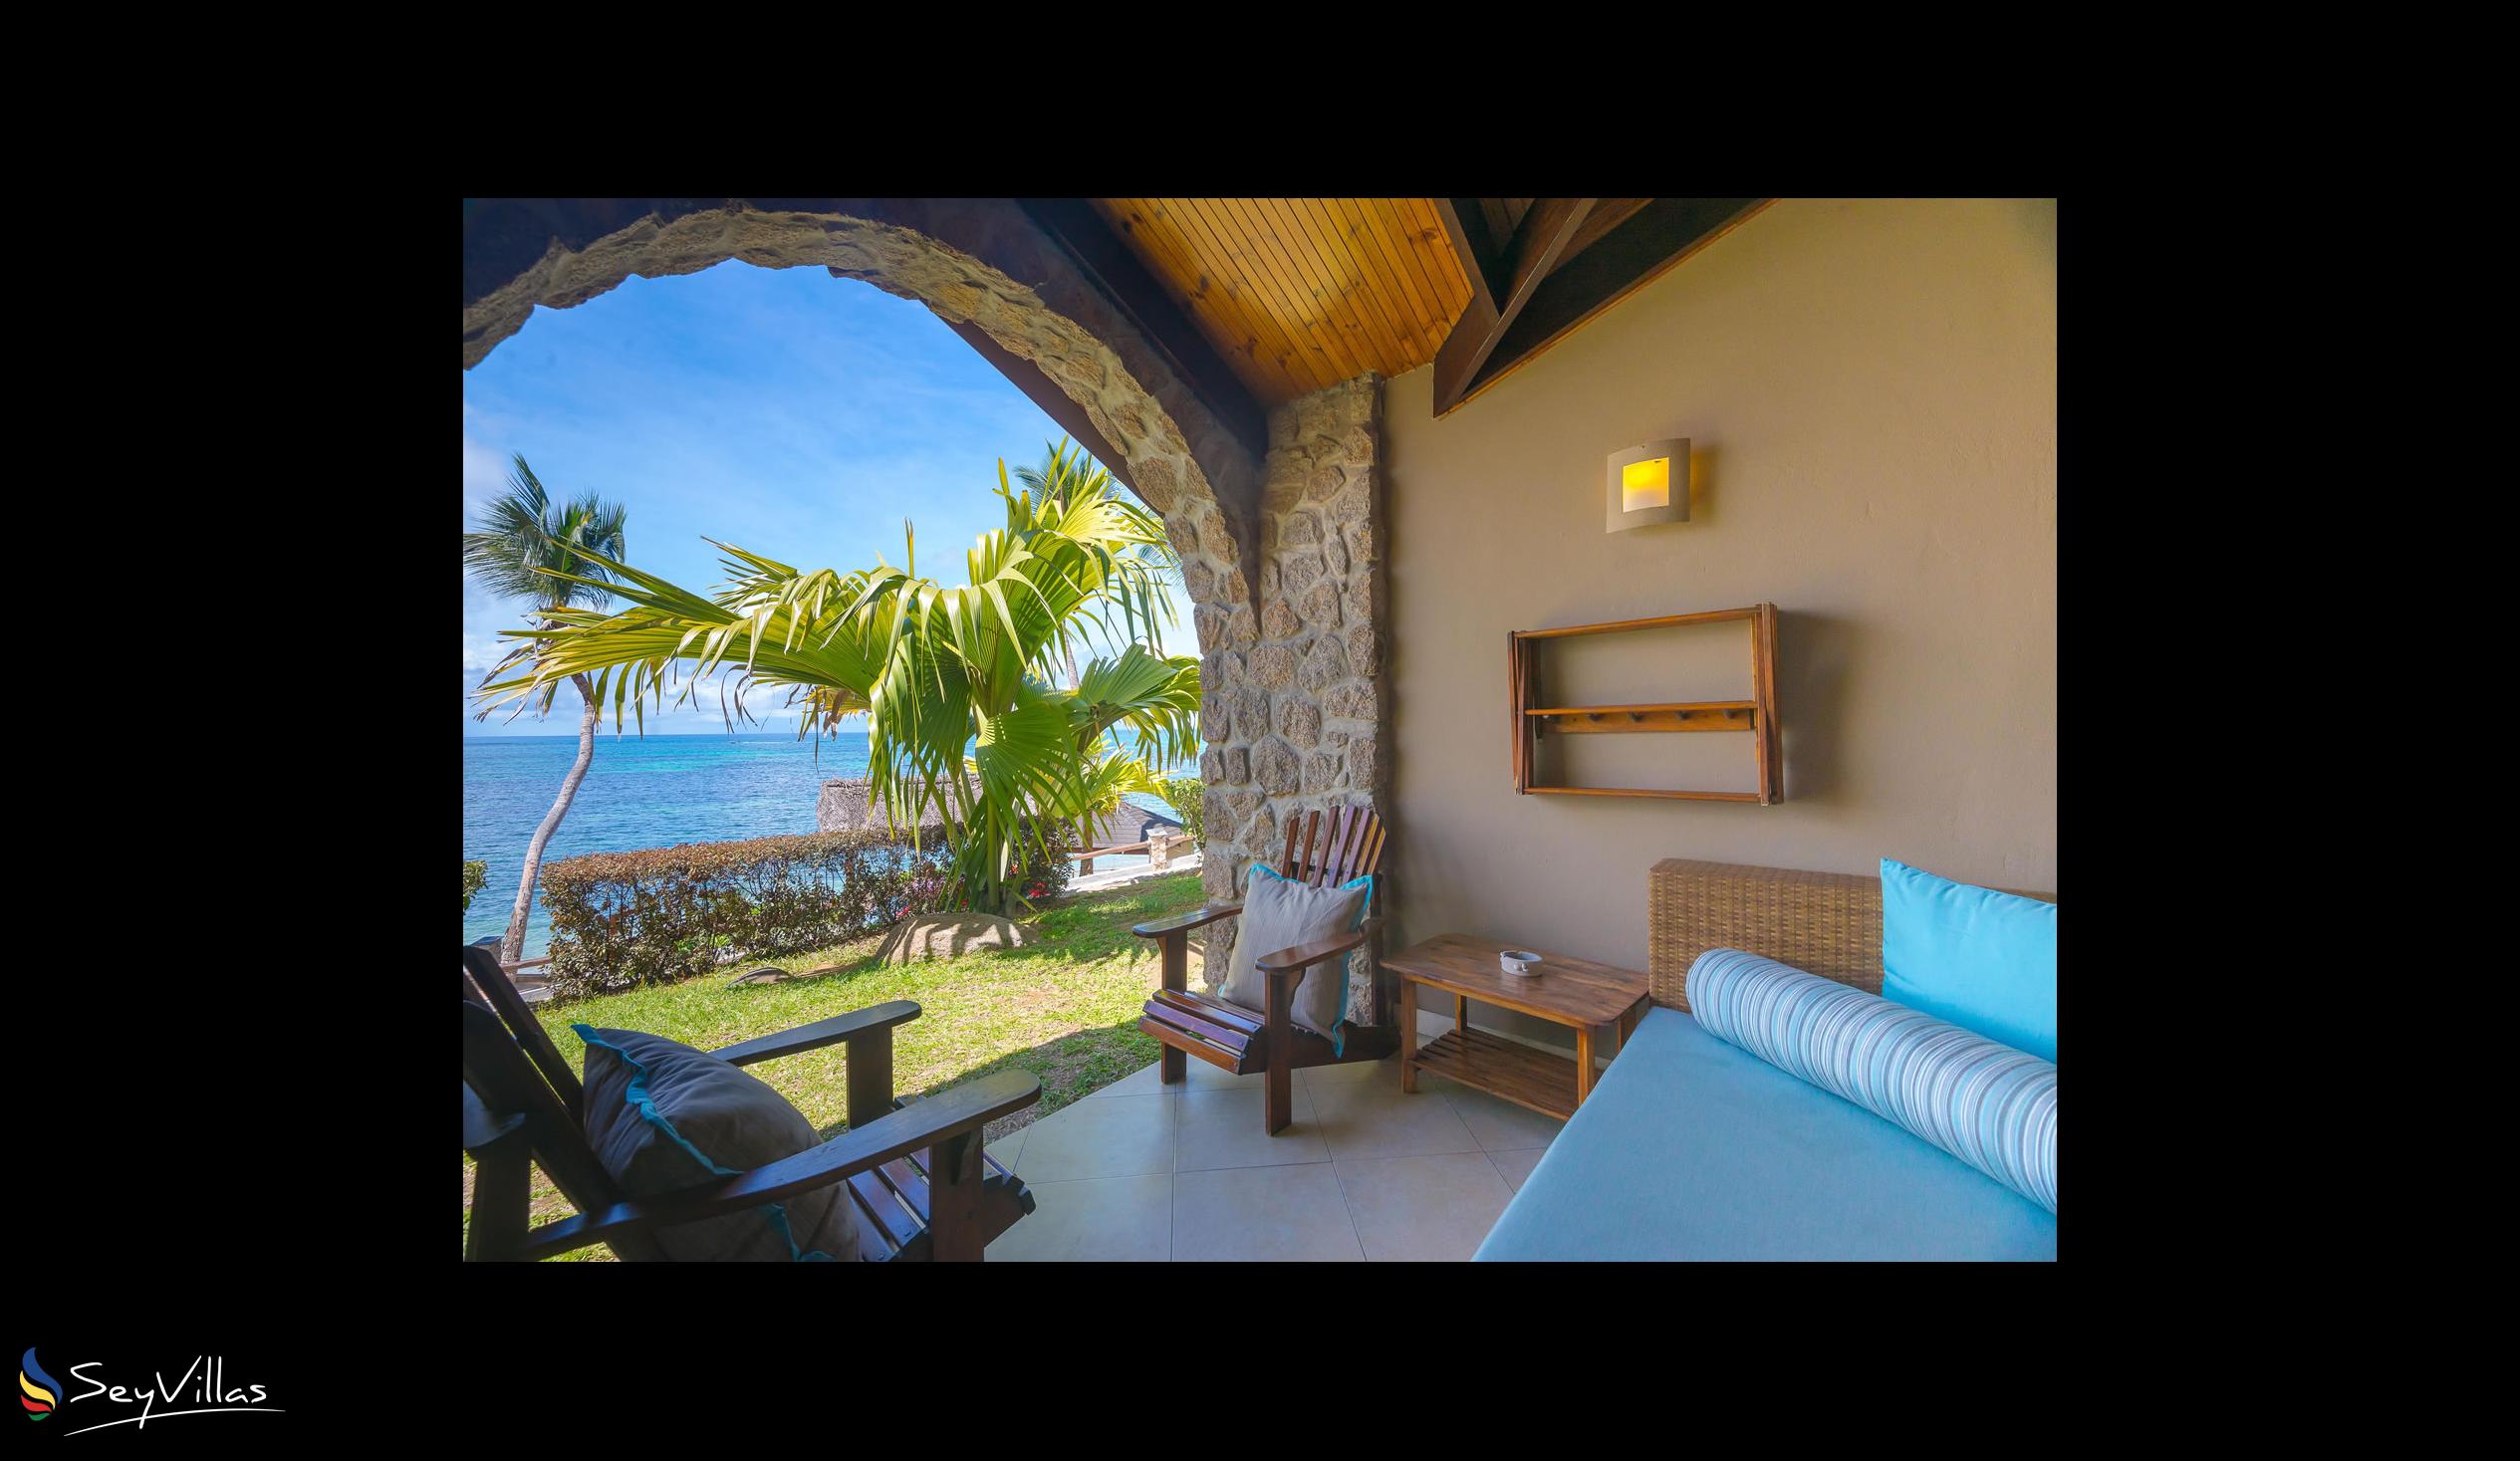 Foto 53: Coco de Mer & Black Parrot Suites - Standard - Praslin (Seychellen)